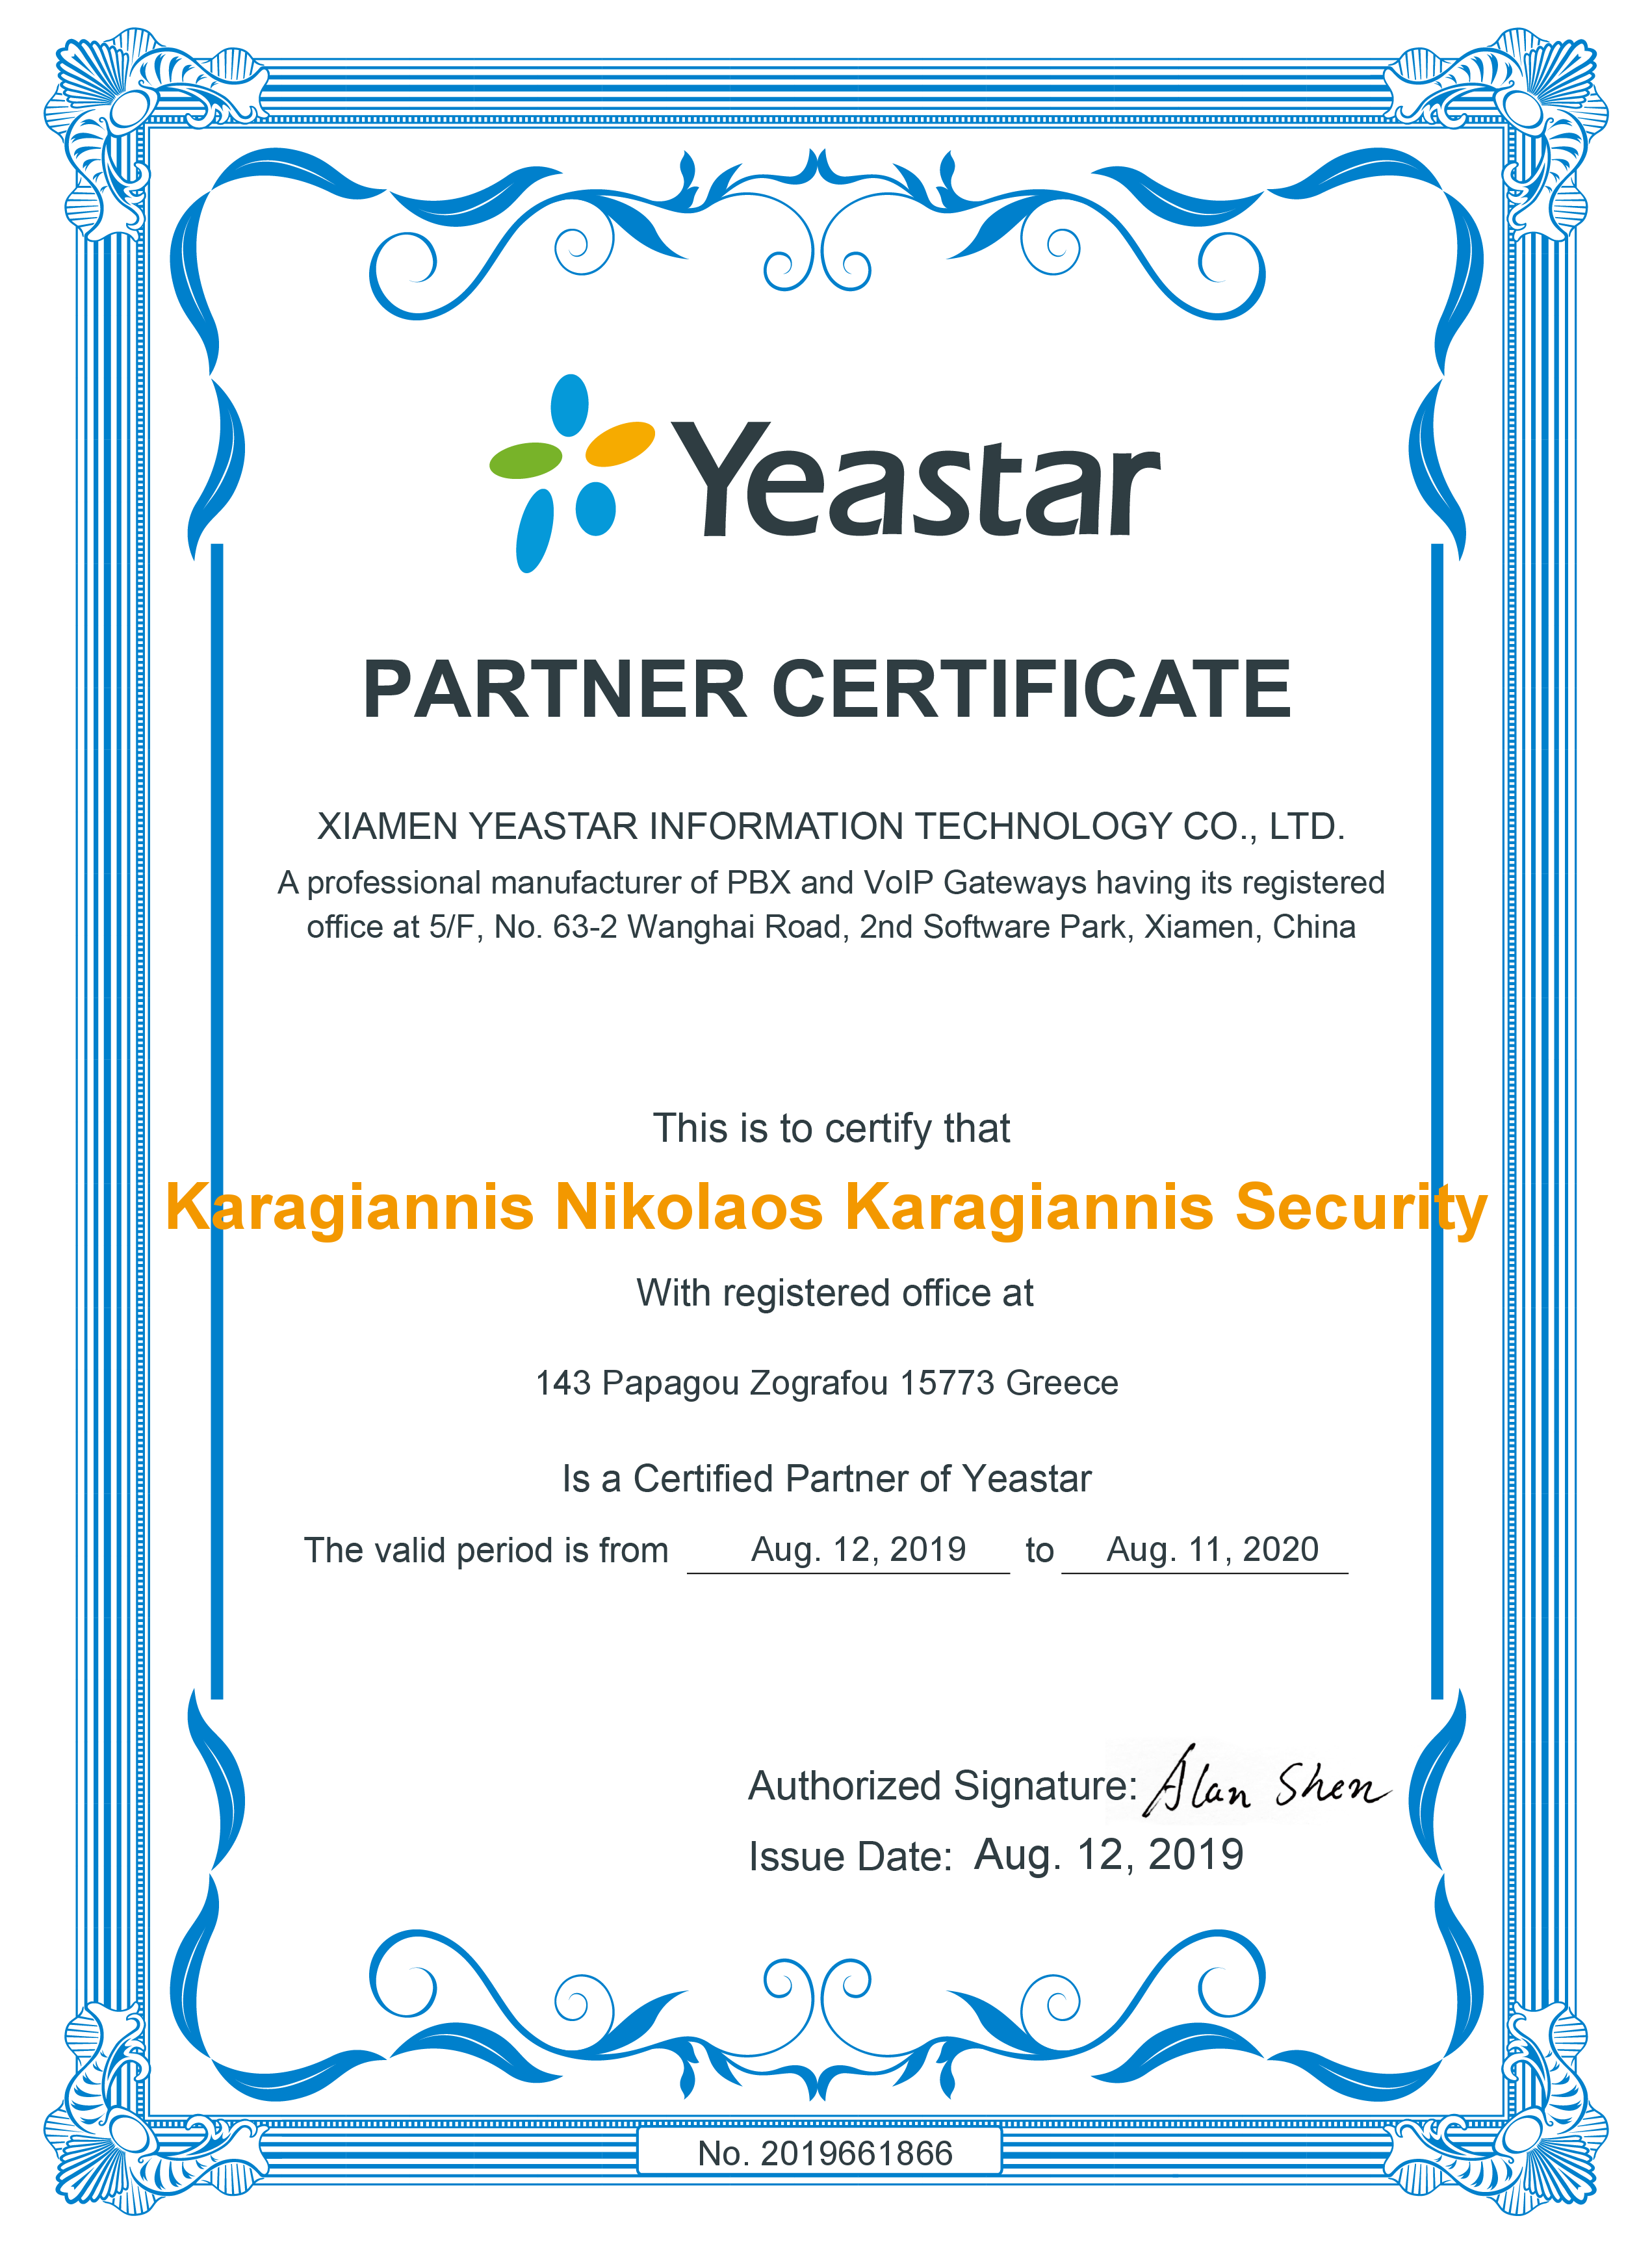 yeastar partner certificate karagiannis security